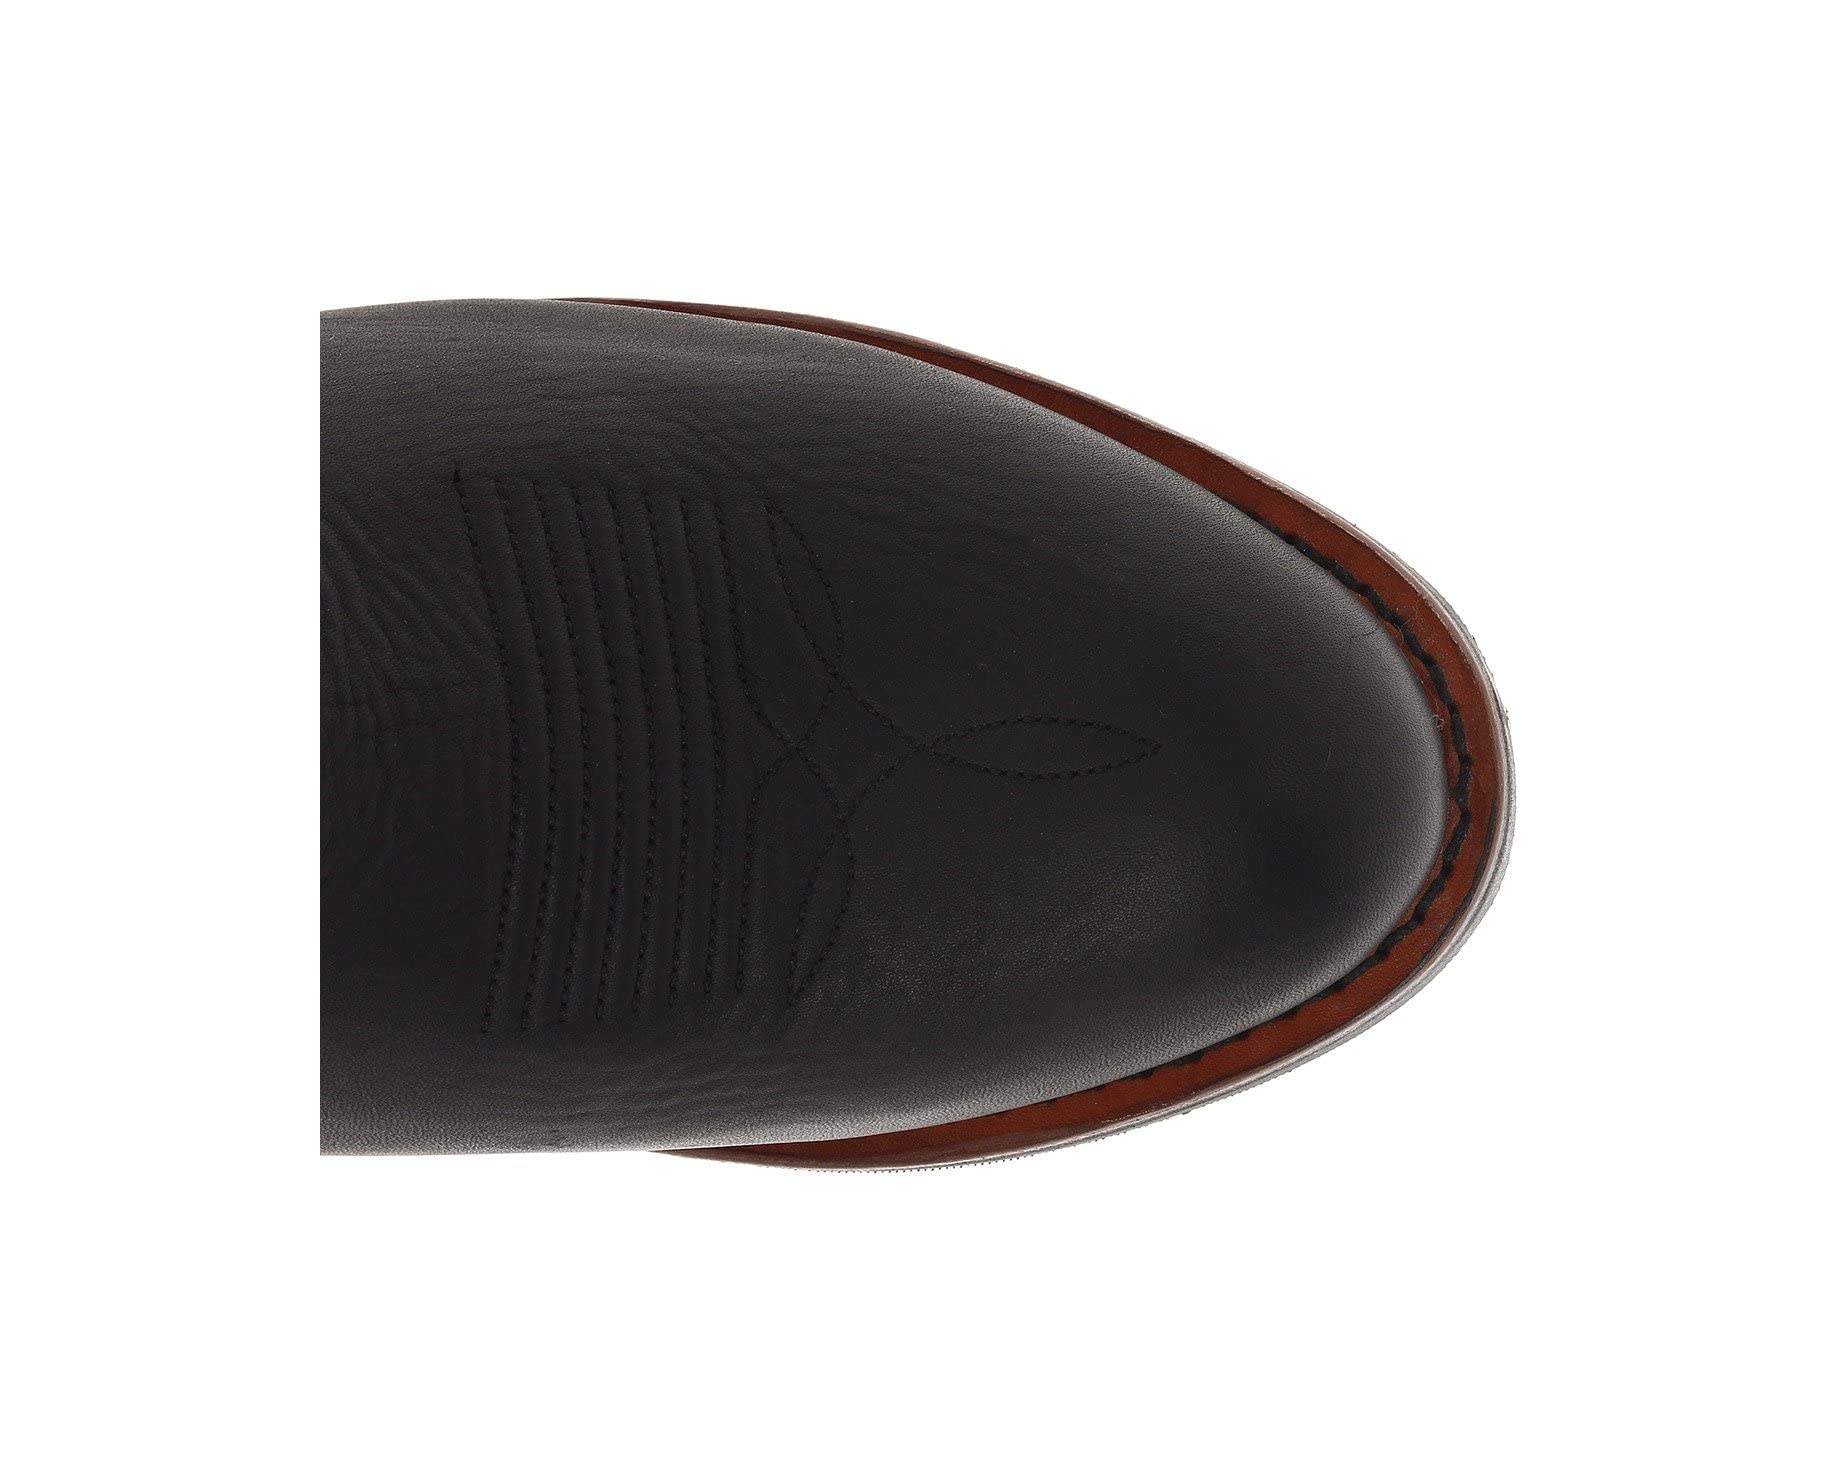 Ботинки Albuquerque Dan Post, черный ботинки dan post warrior composite toe цвет brown leather